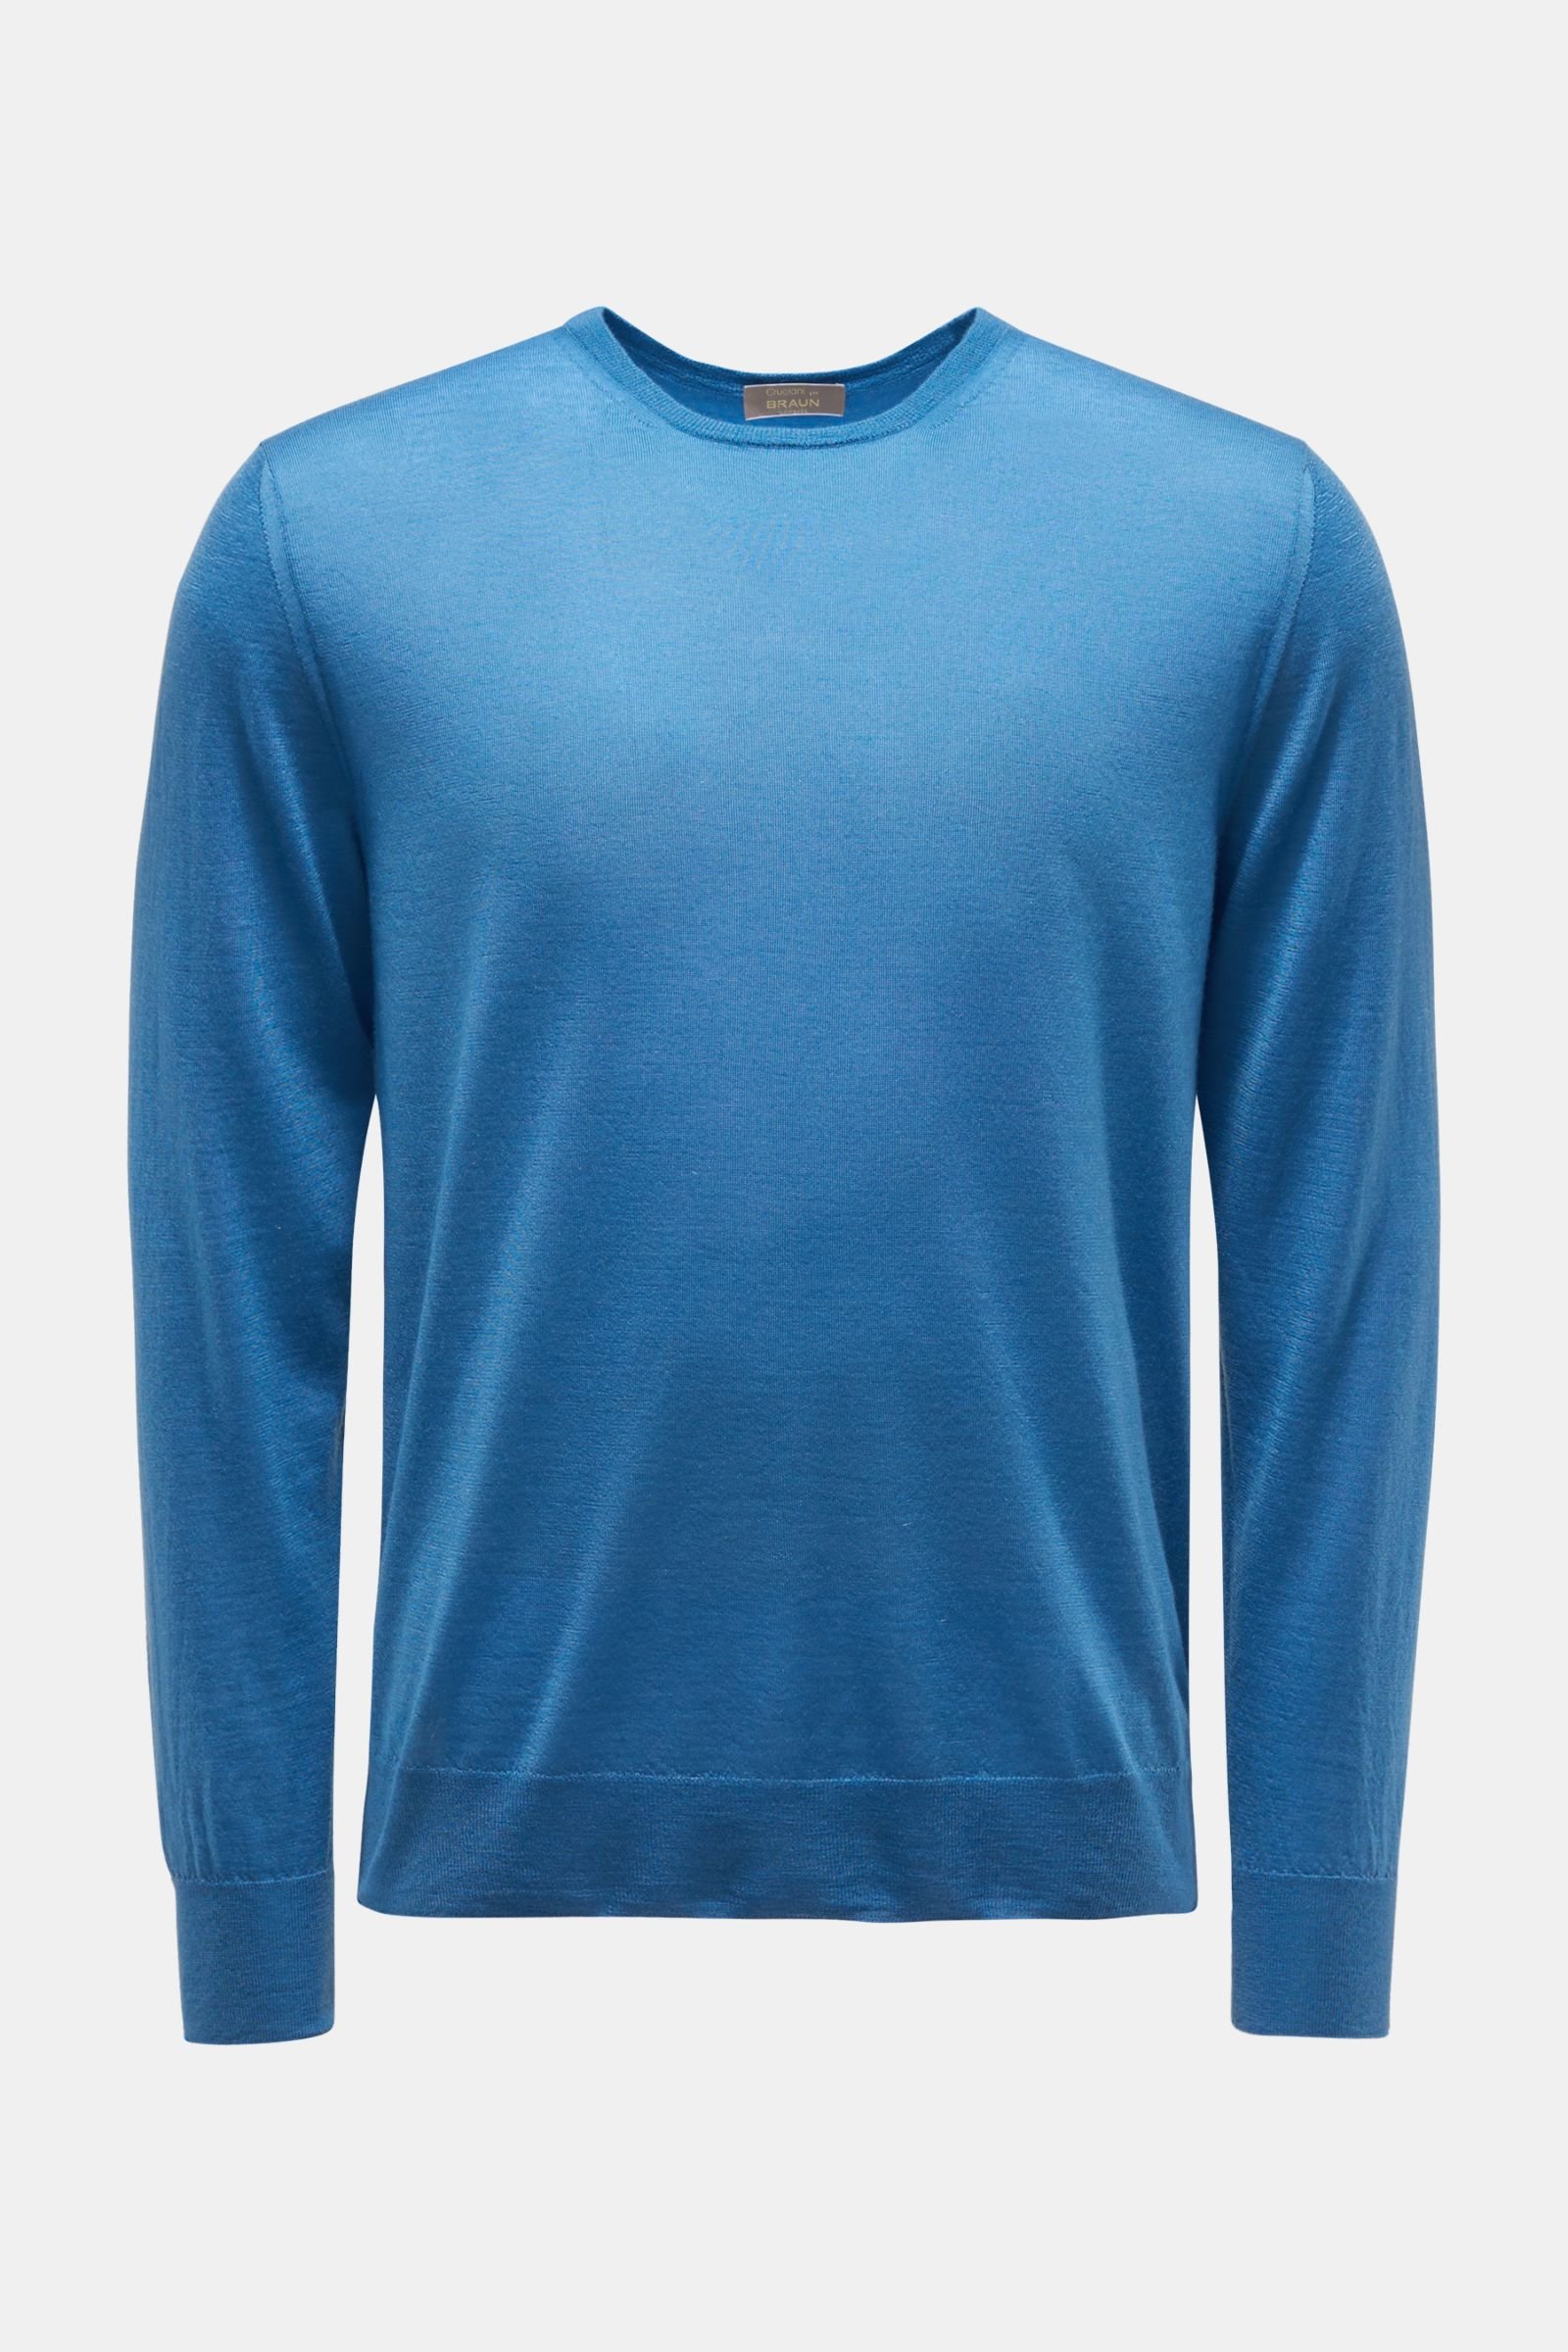 Feinstrick Rundhals-Pullover blau